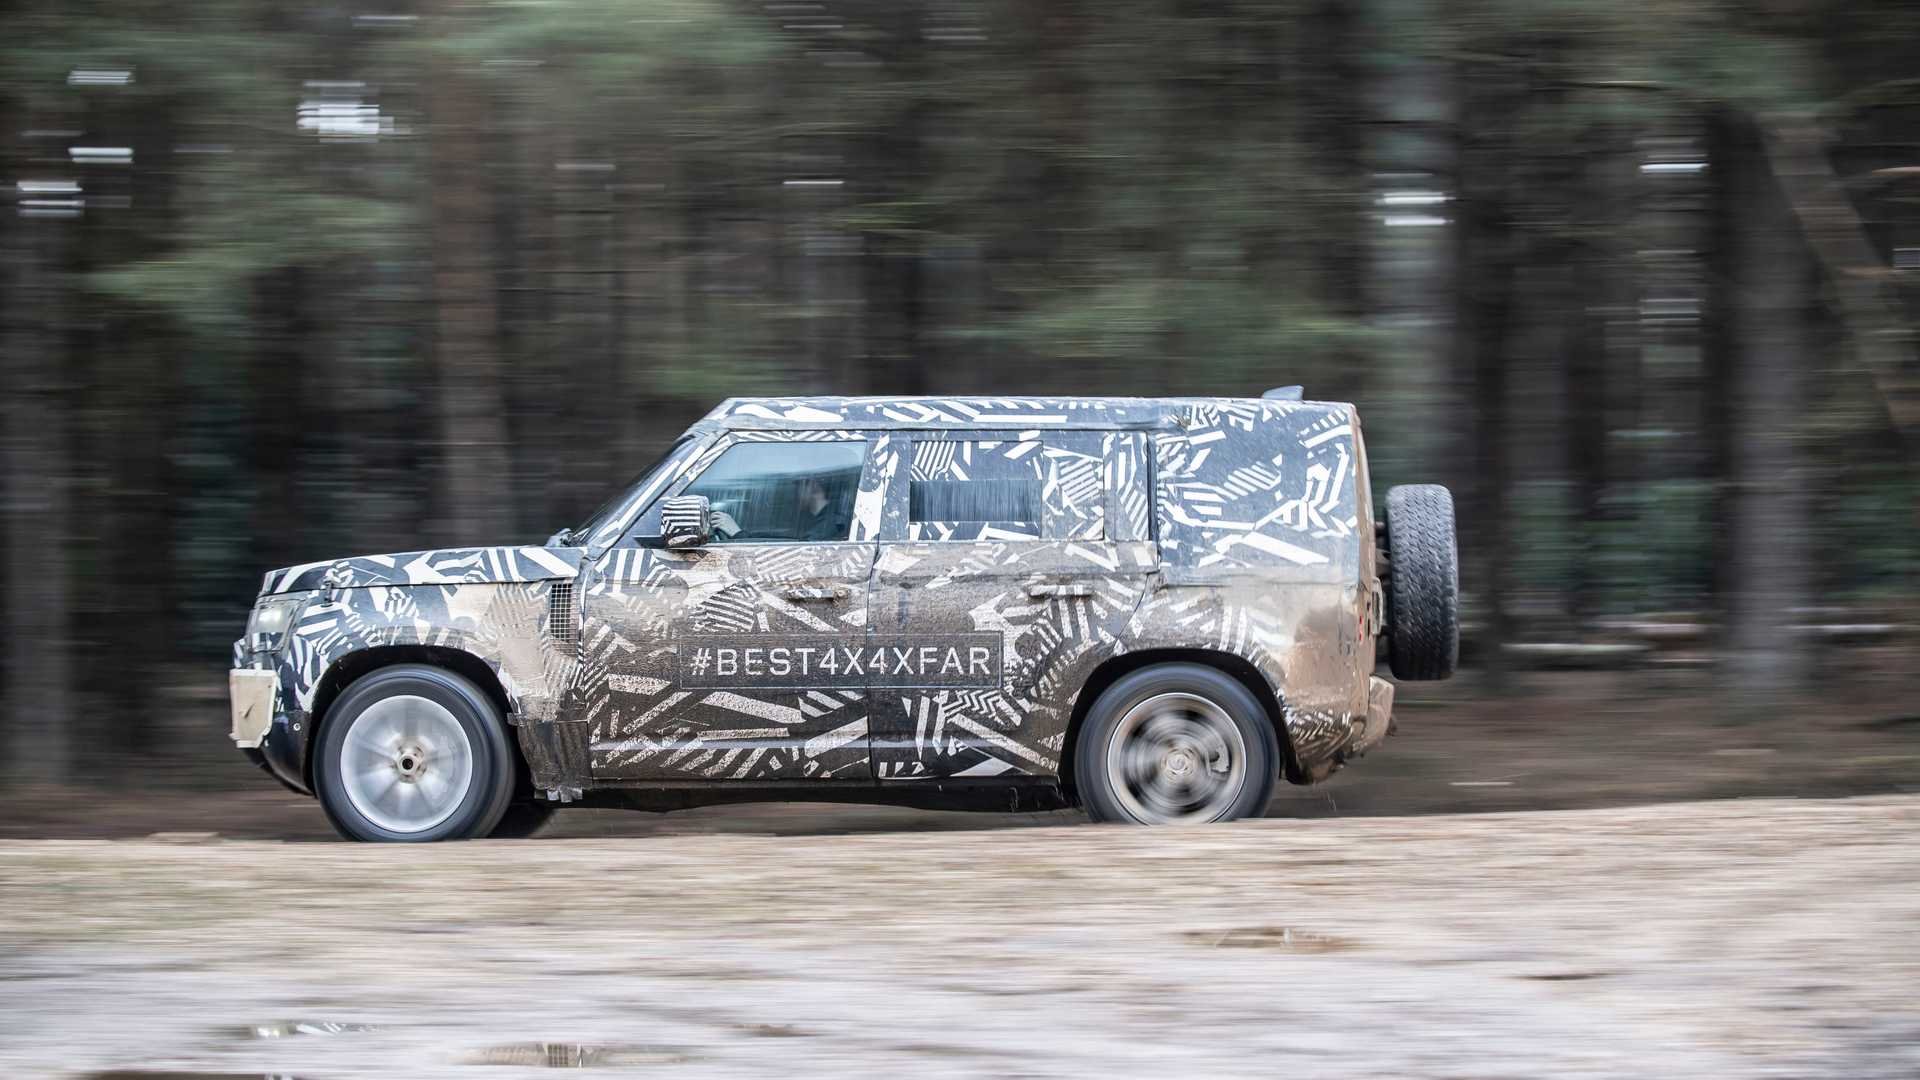 Automobilka Land Rover se rozhodla oslavit „World Land Rover Day" zveřejněním fotek z testování nového Defenderu